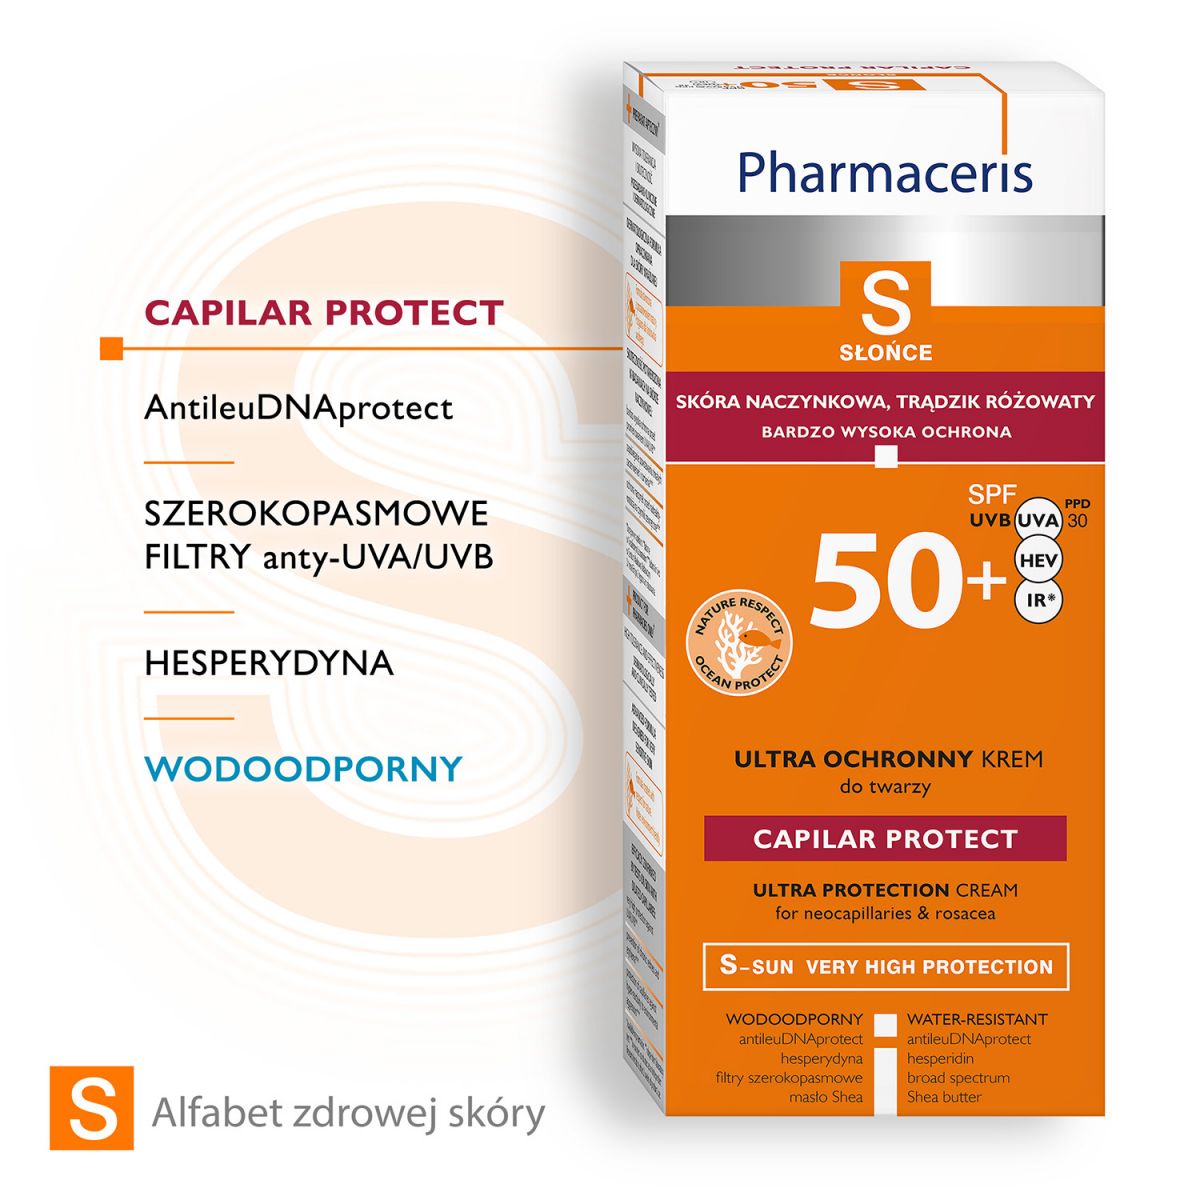 Pharmaceris S CAPILAR PROTECT  naczynka i trądzik różowaty SPF 50+